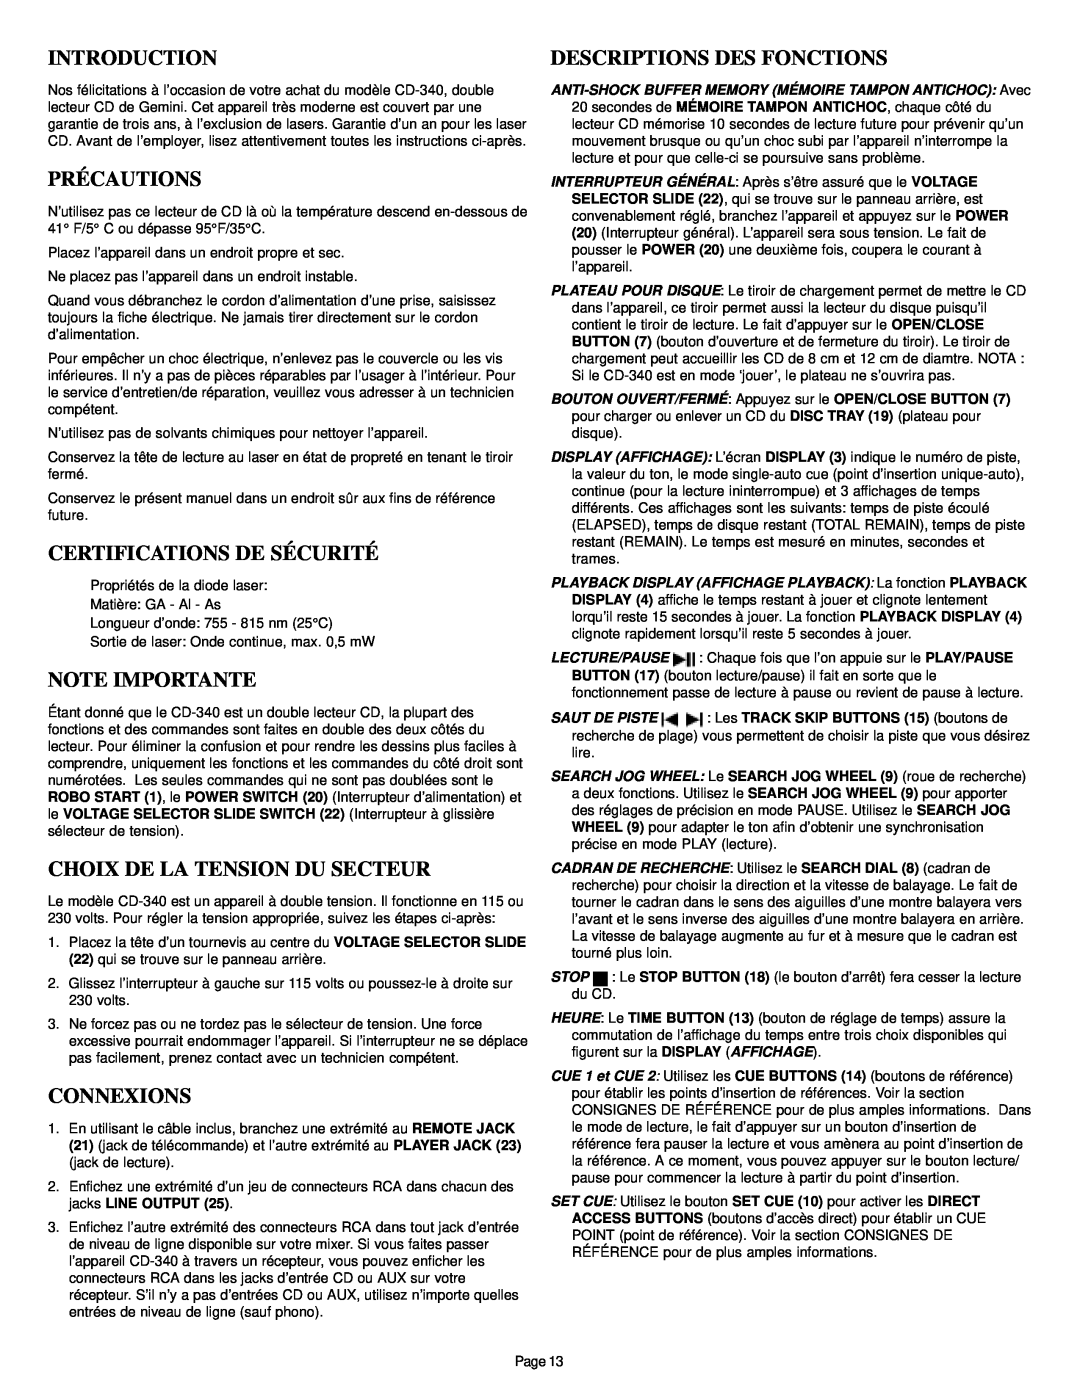 Gemini CD-340 manual Descriptions Des Fonctions, Précautions, Certifications De Sécurité, Note Importante, Connexions 